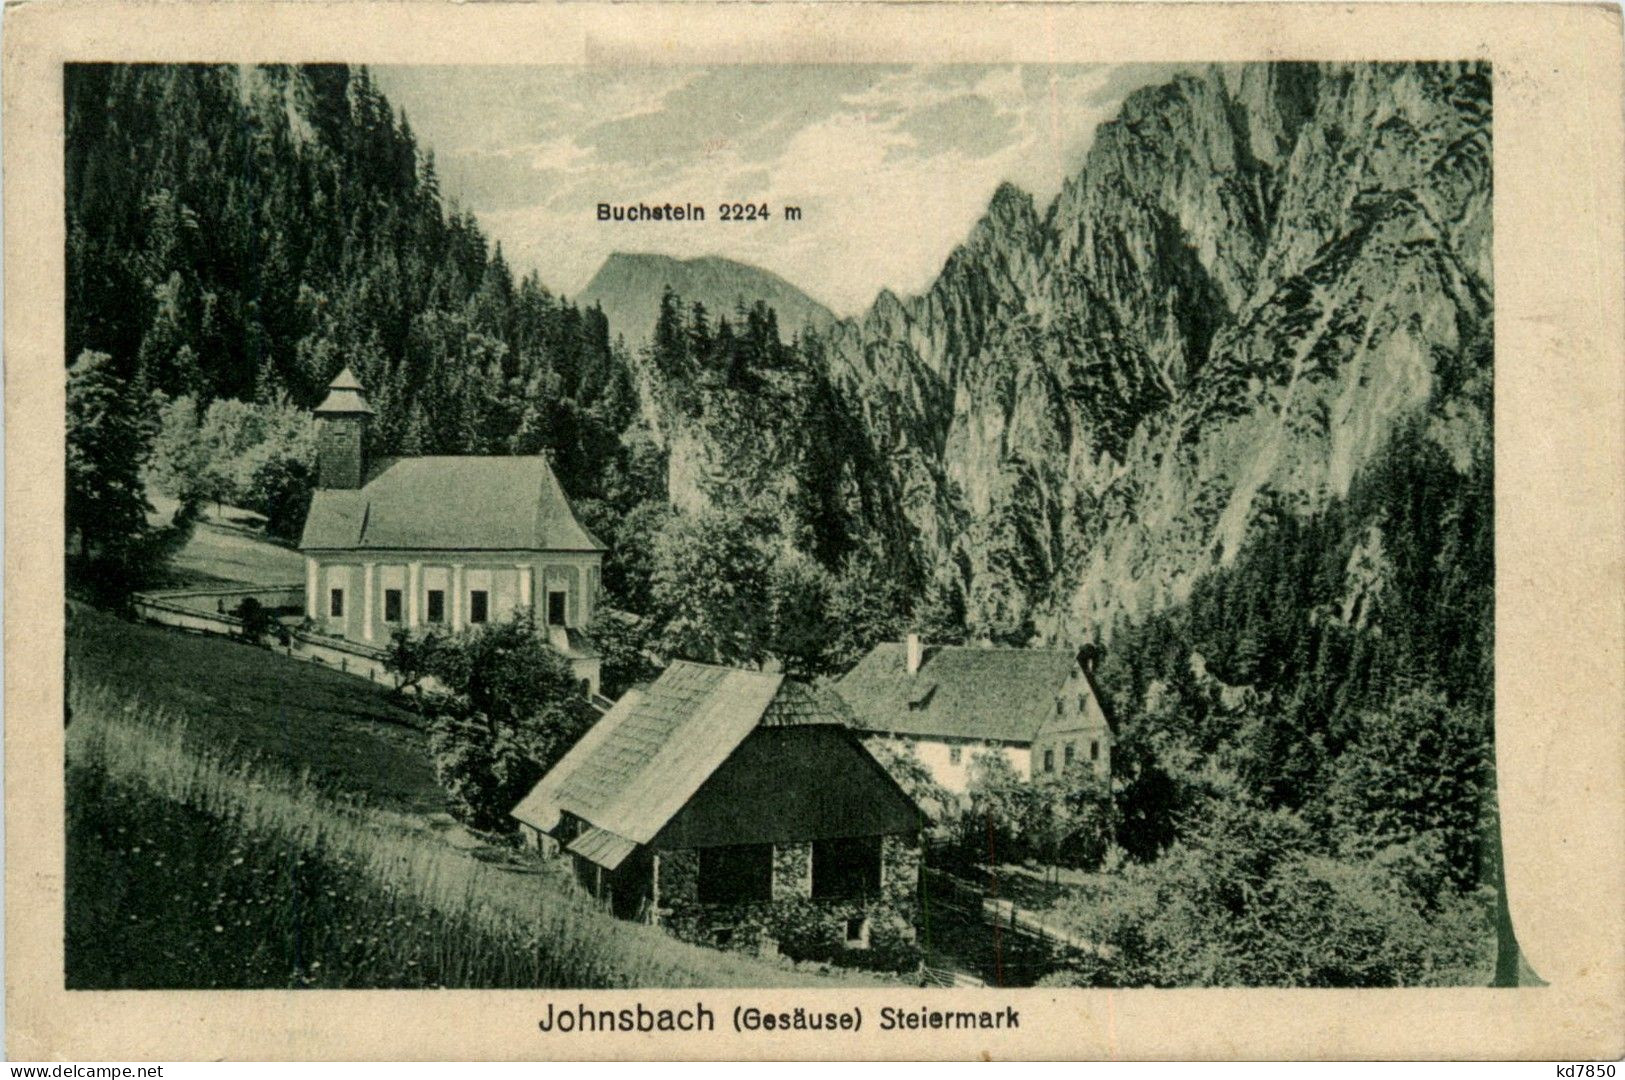 Gesäuse/Steiermark - Gesäuse, Johnsbach M.Buchstein - Gesäuse